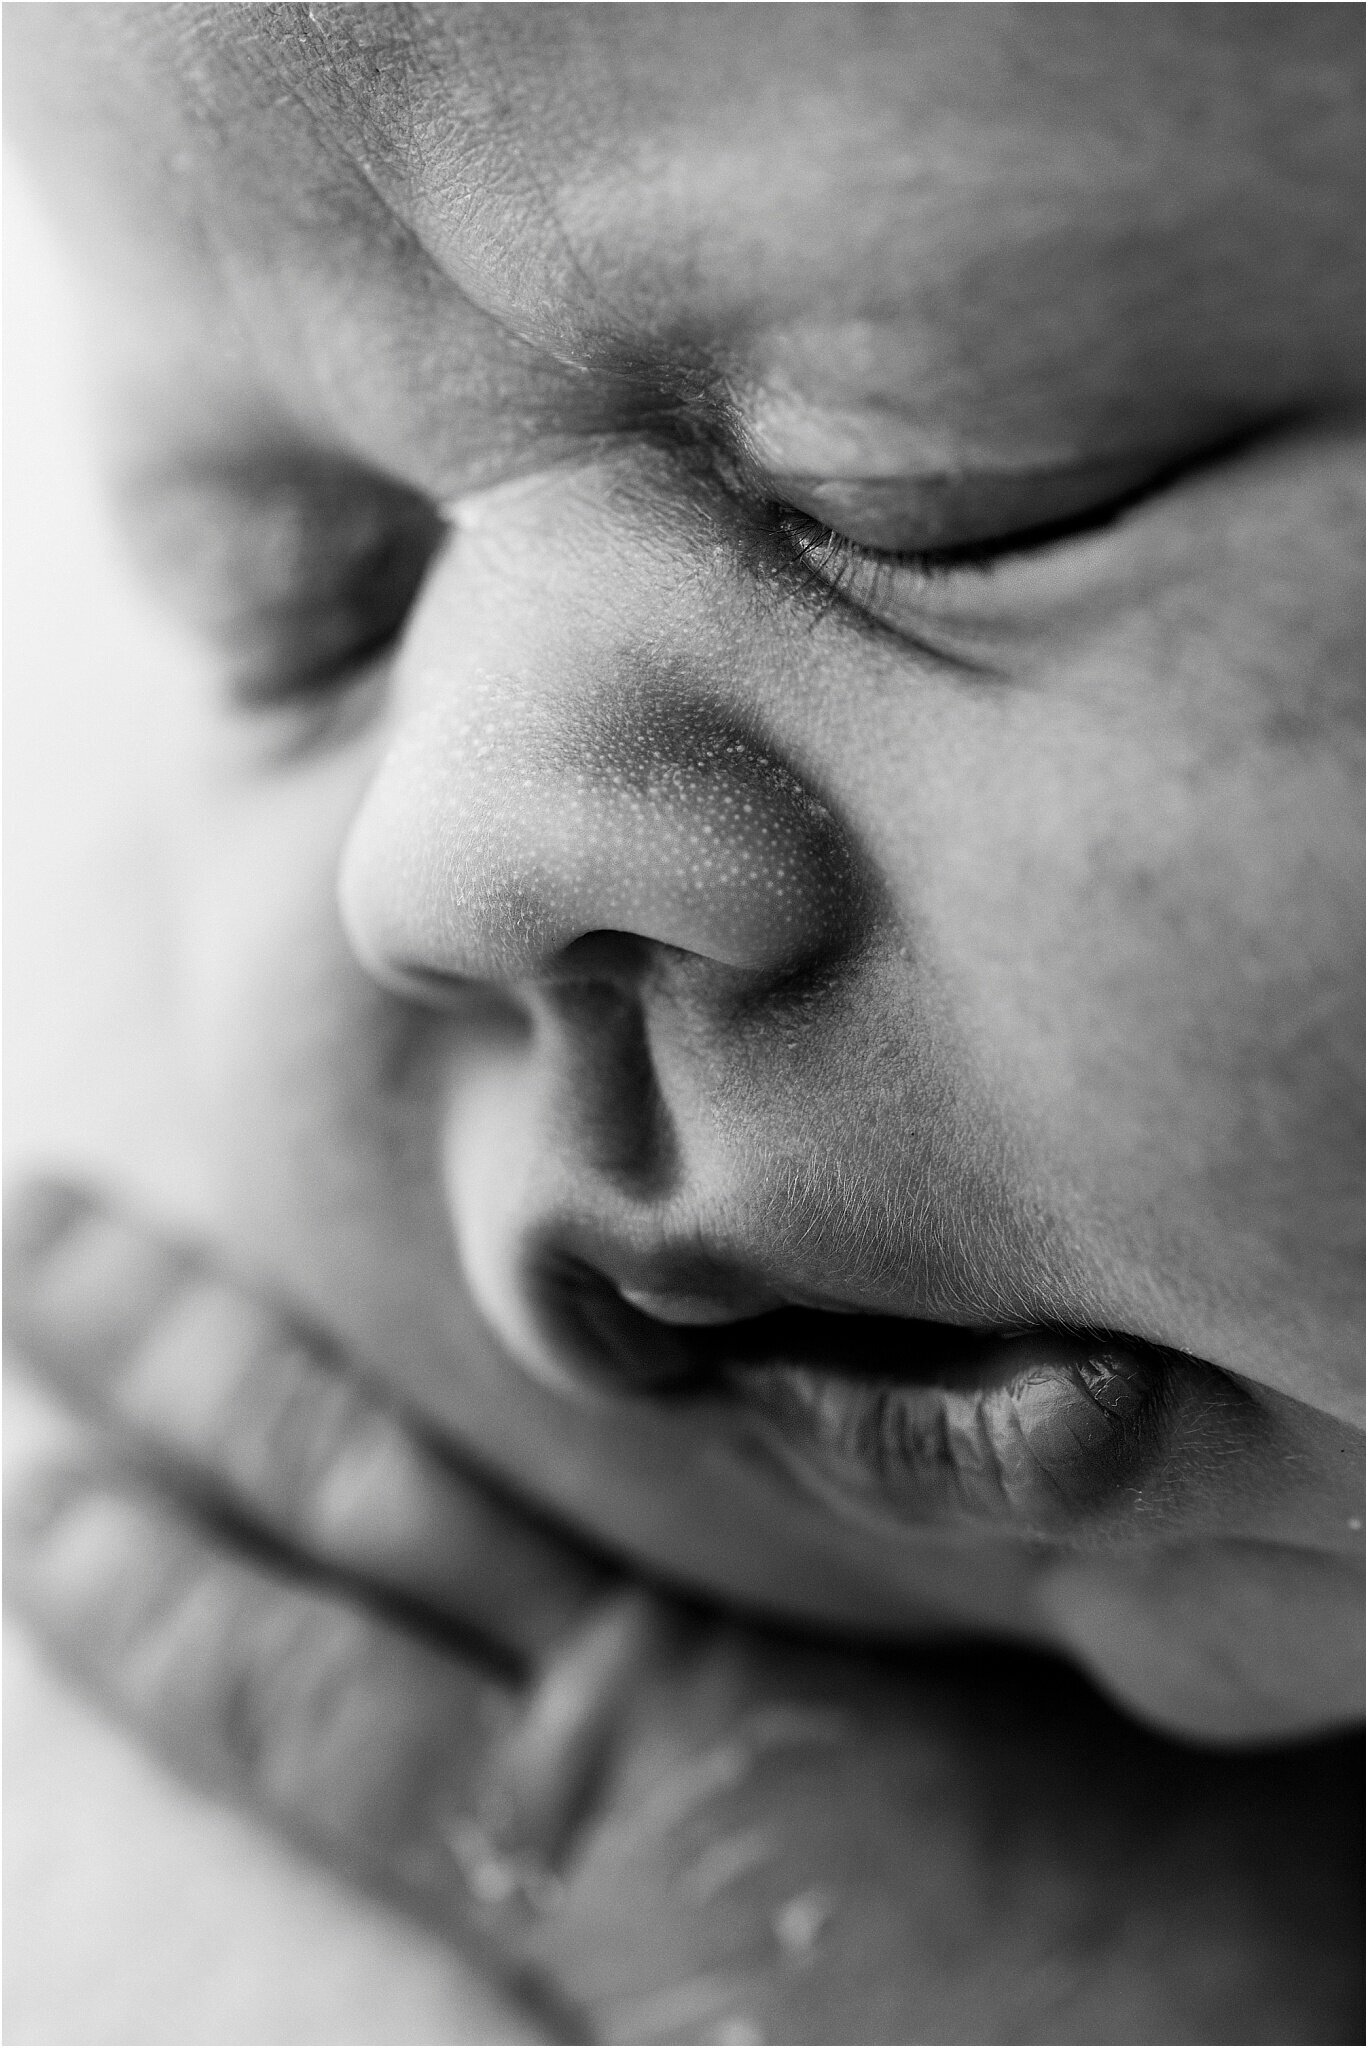 Newborn Photography Milton Keynes